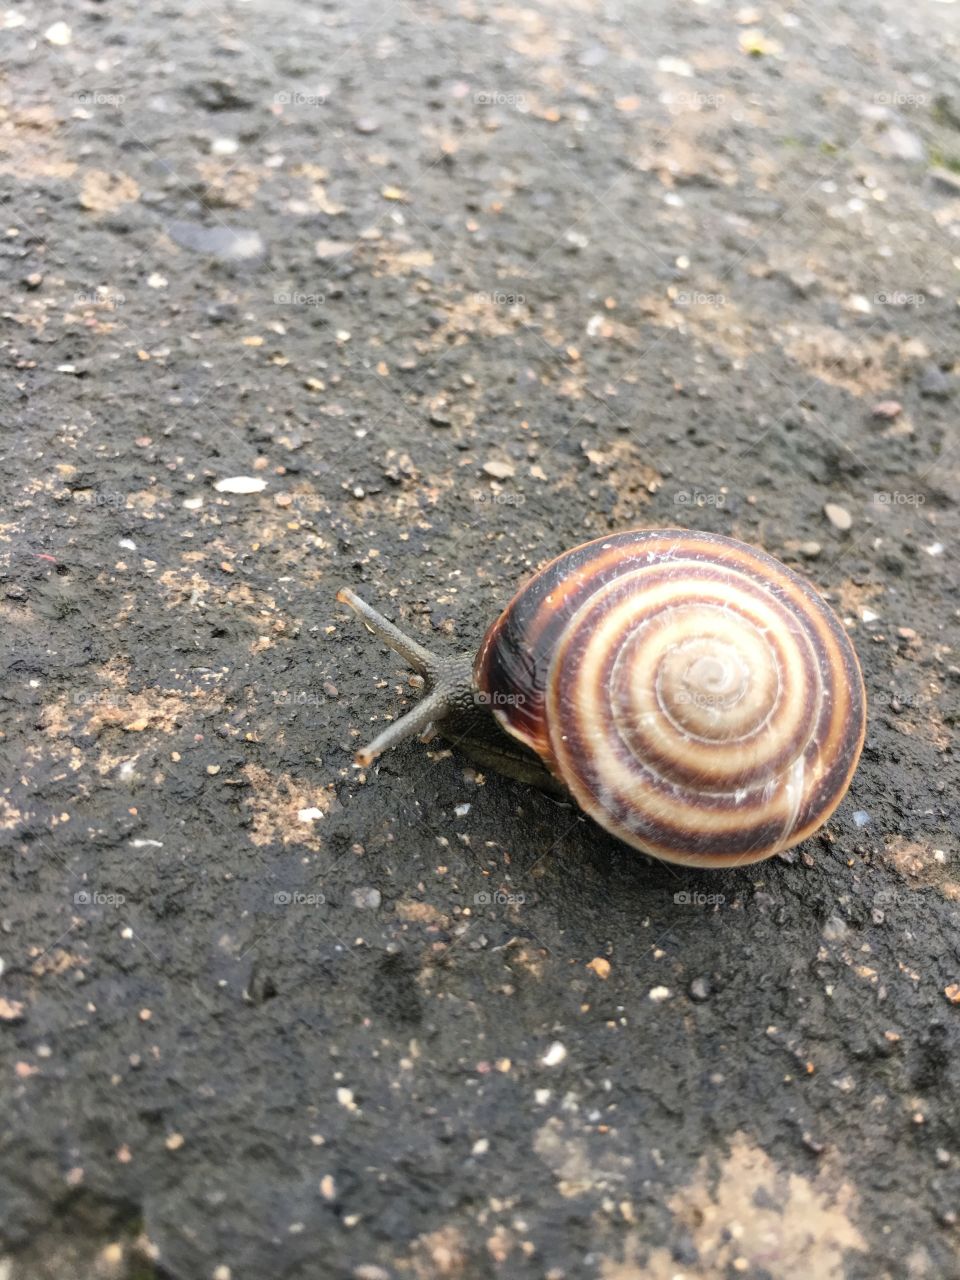 Snail
